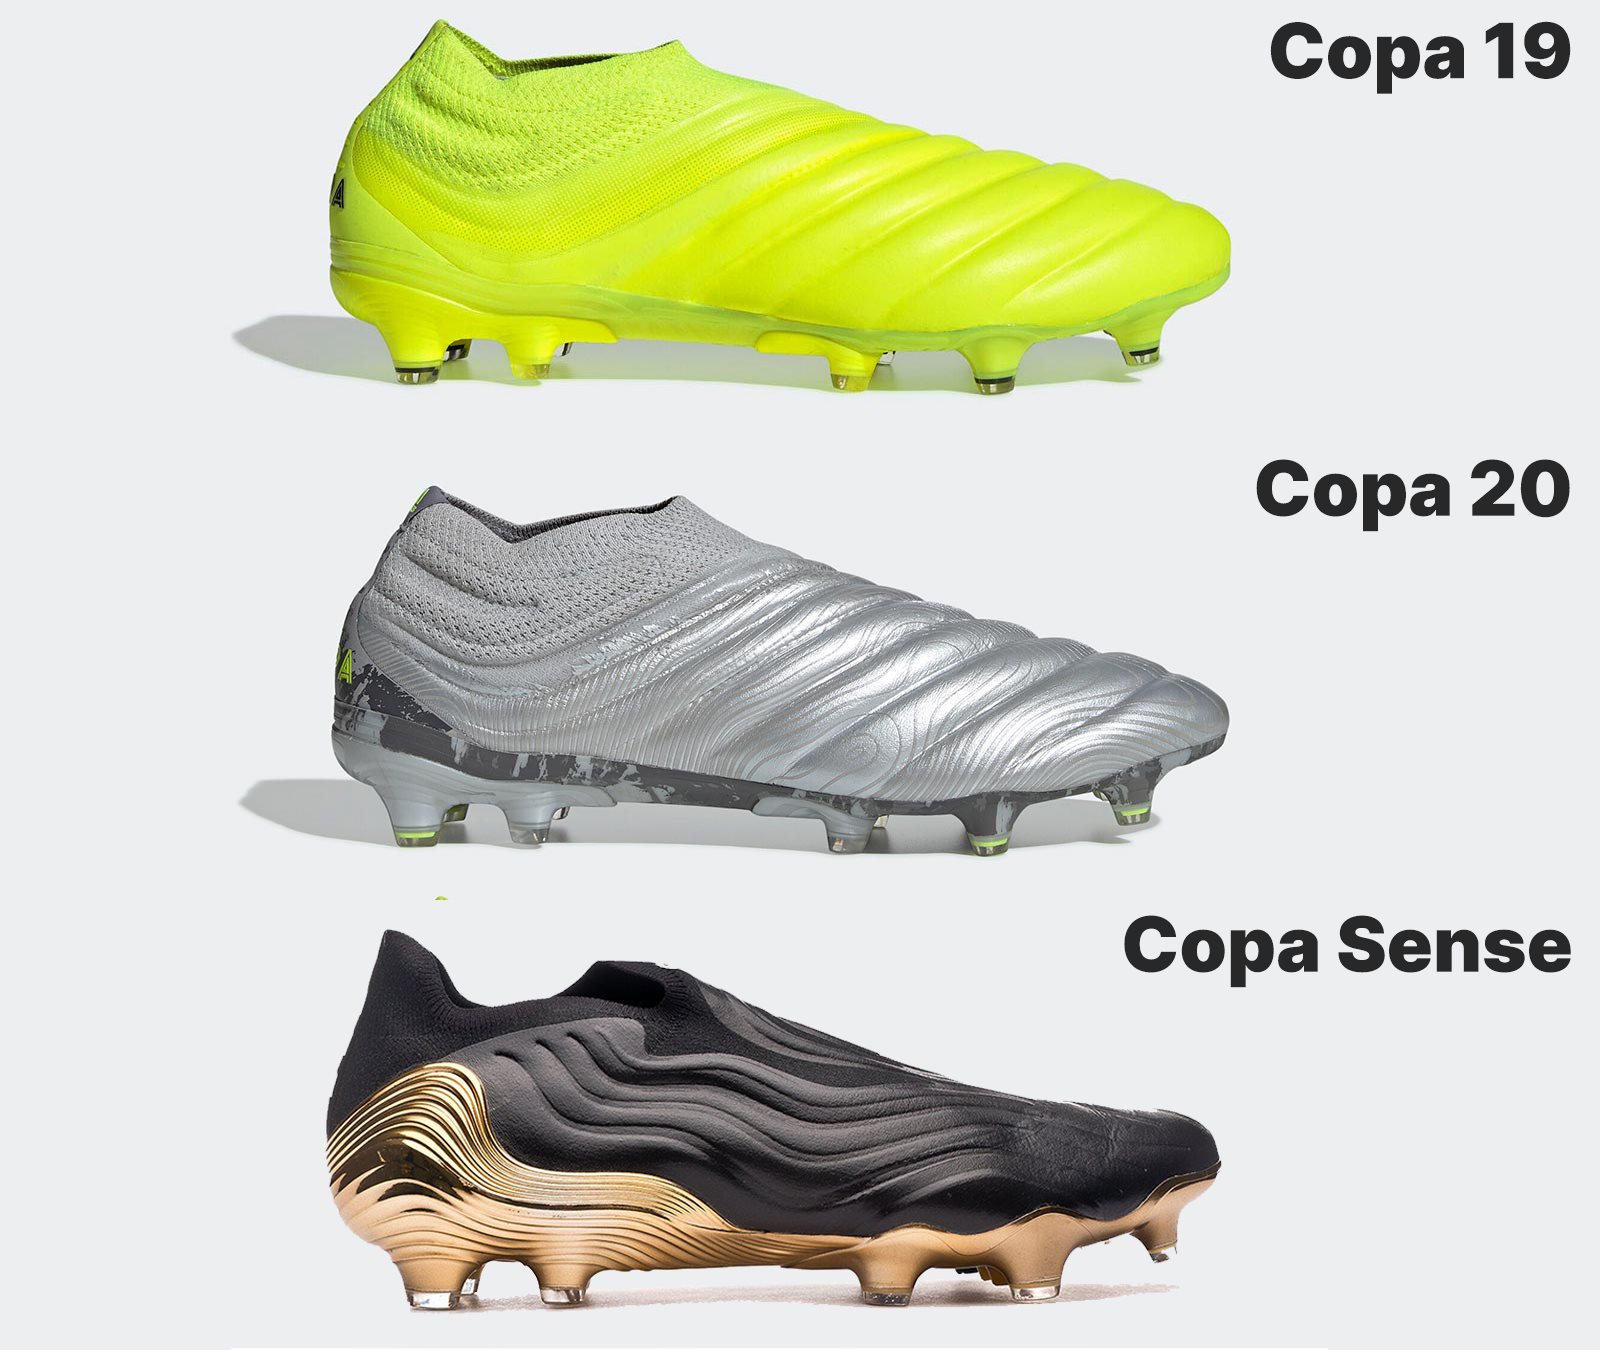 Represalias gastos generales Poesía Exclusive: Adidas to Use No Kangaroo Leather For Next-Gen Adidas Copa 2023  Boots - Footy Headlines